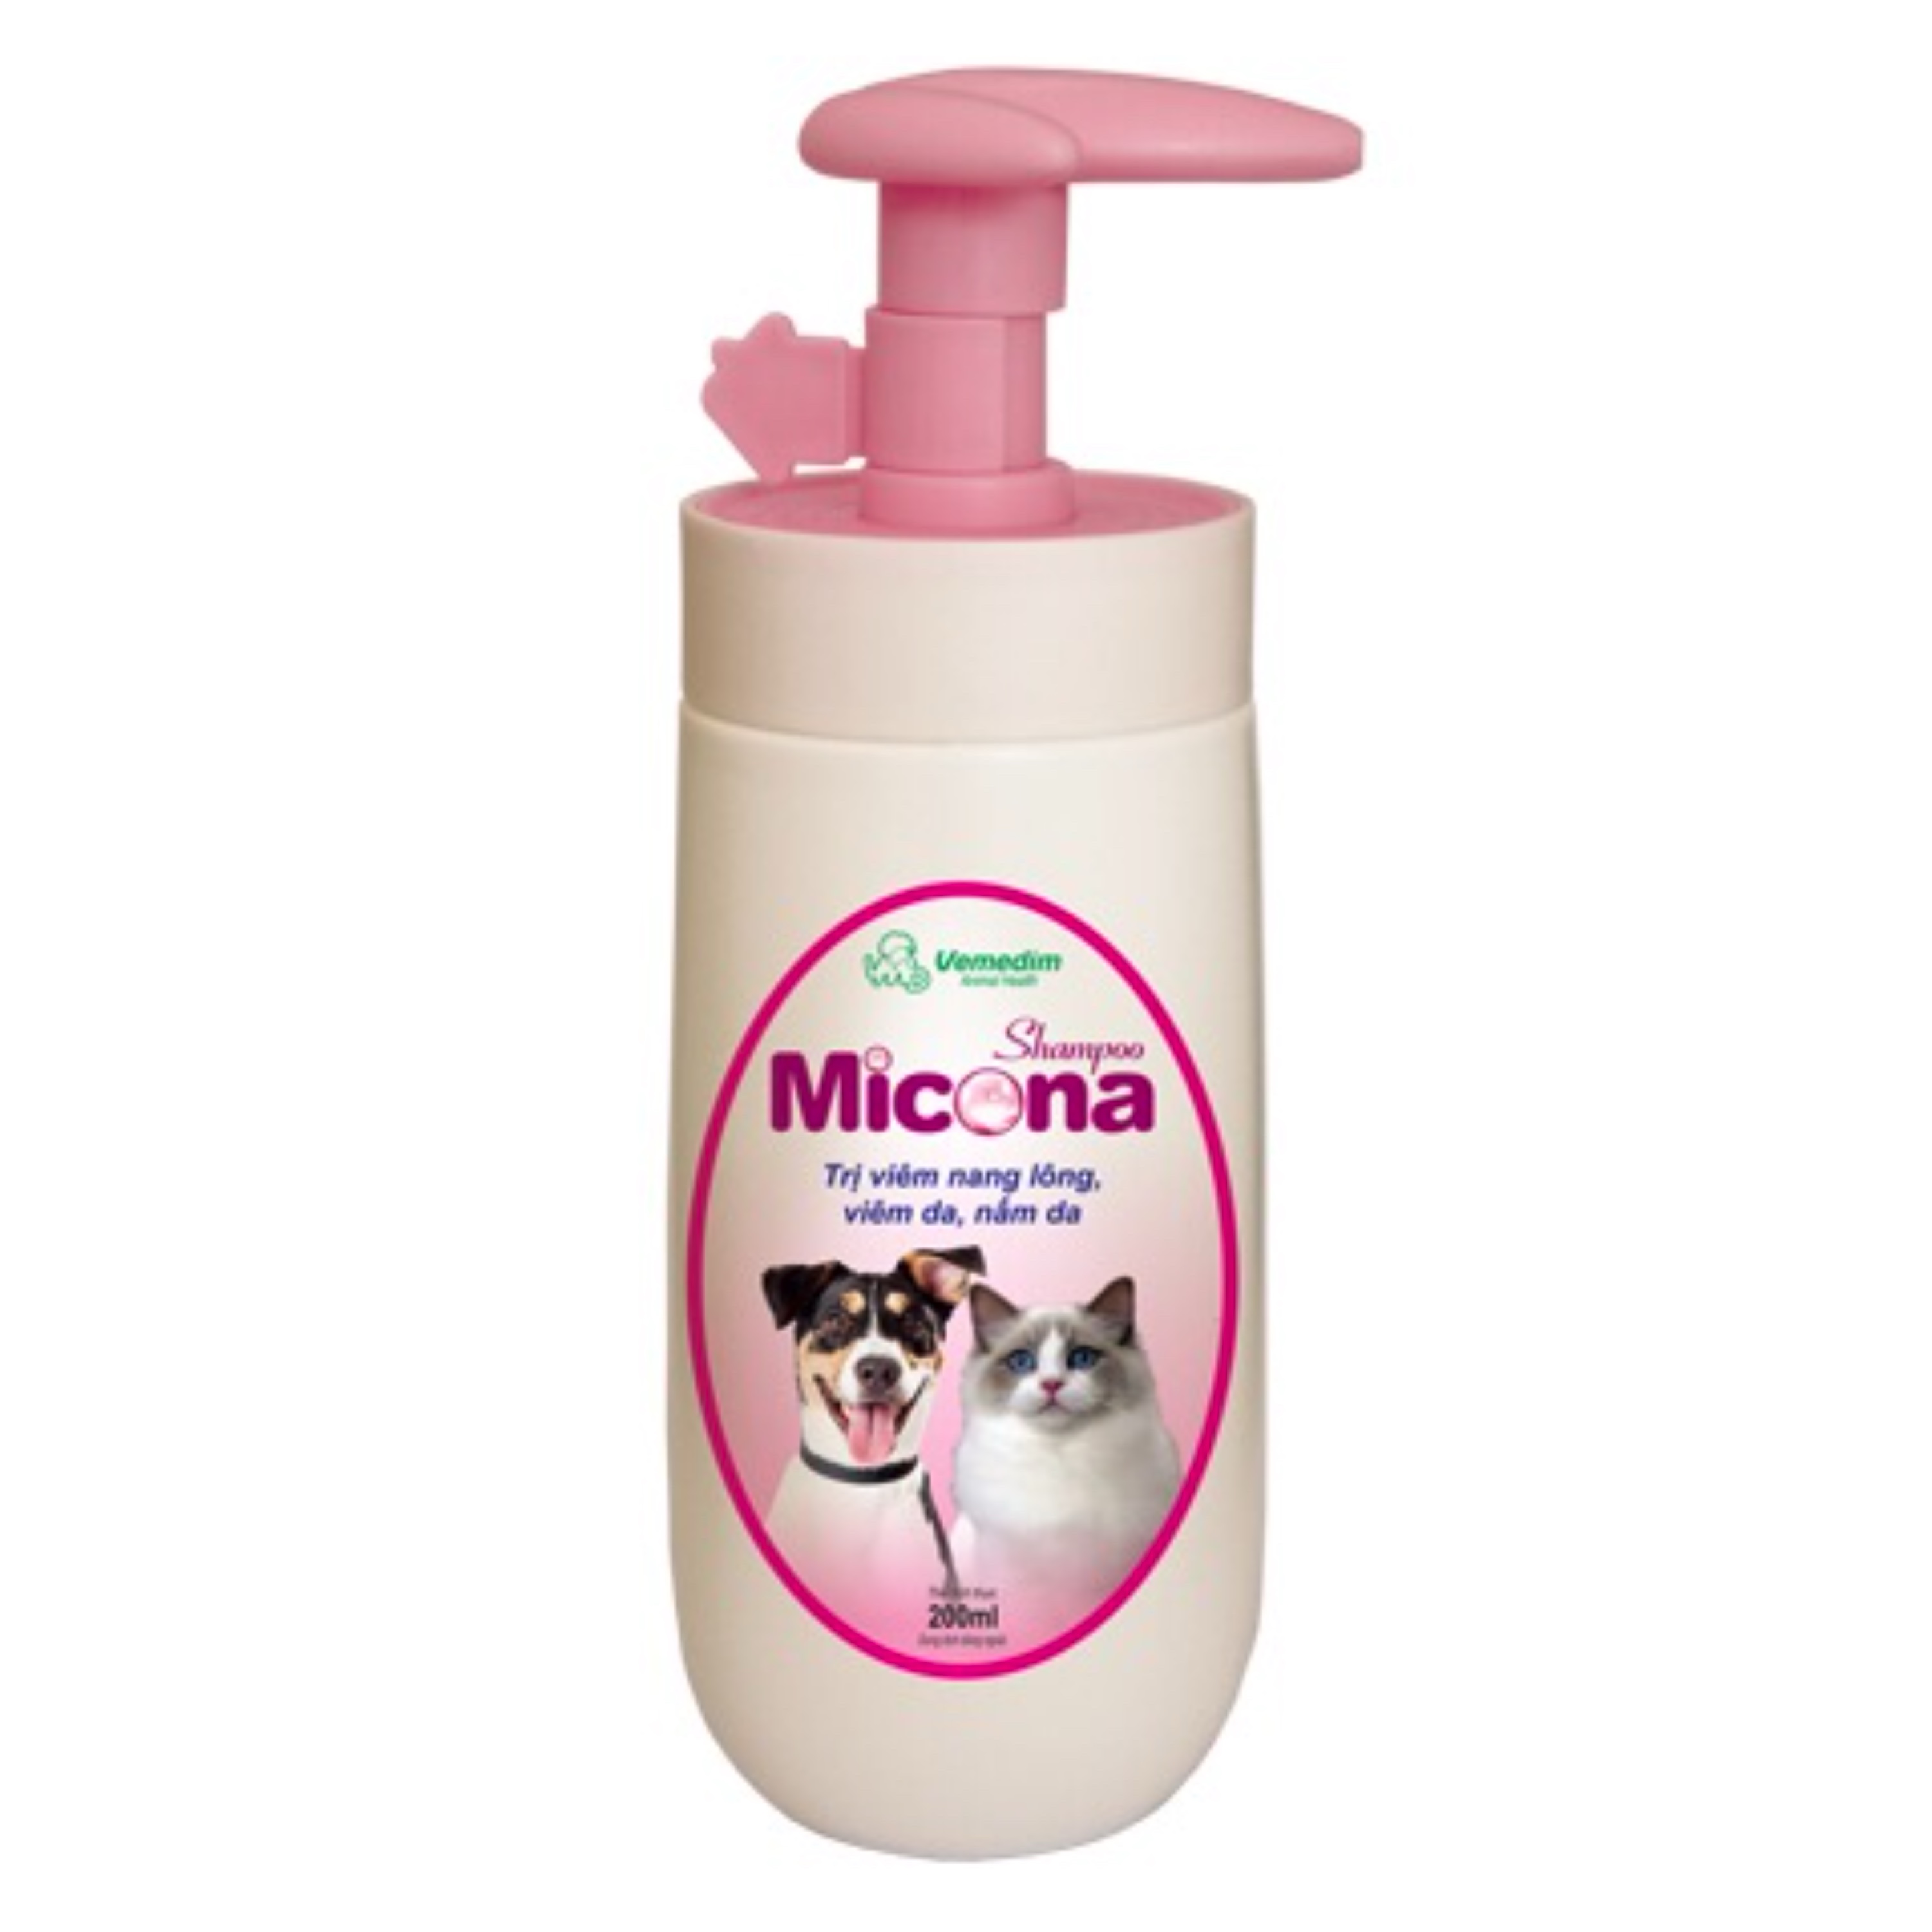 Sữa Tắm Gội Micona Shampoo VN [Phòng Trị Nấm] 200ml